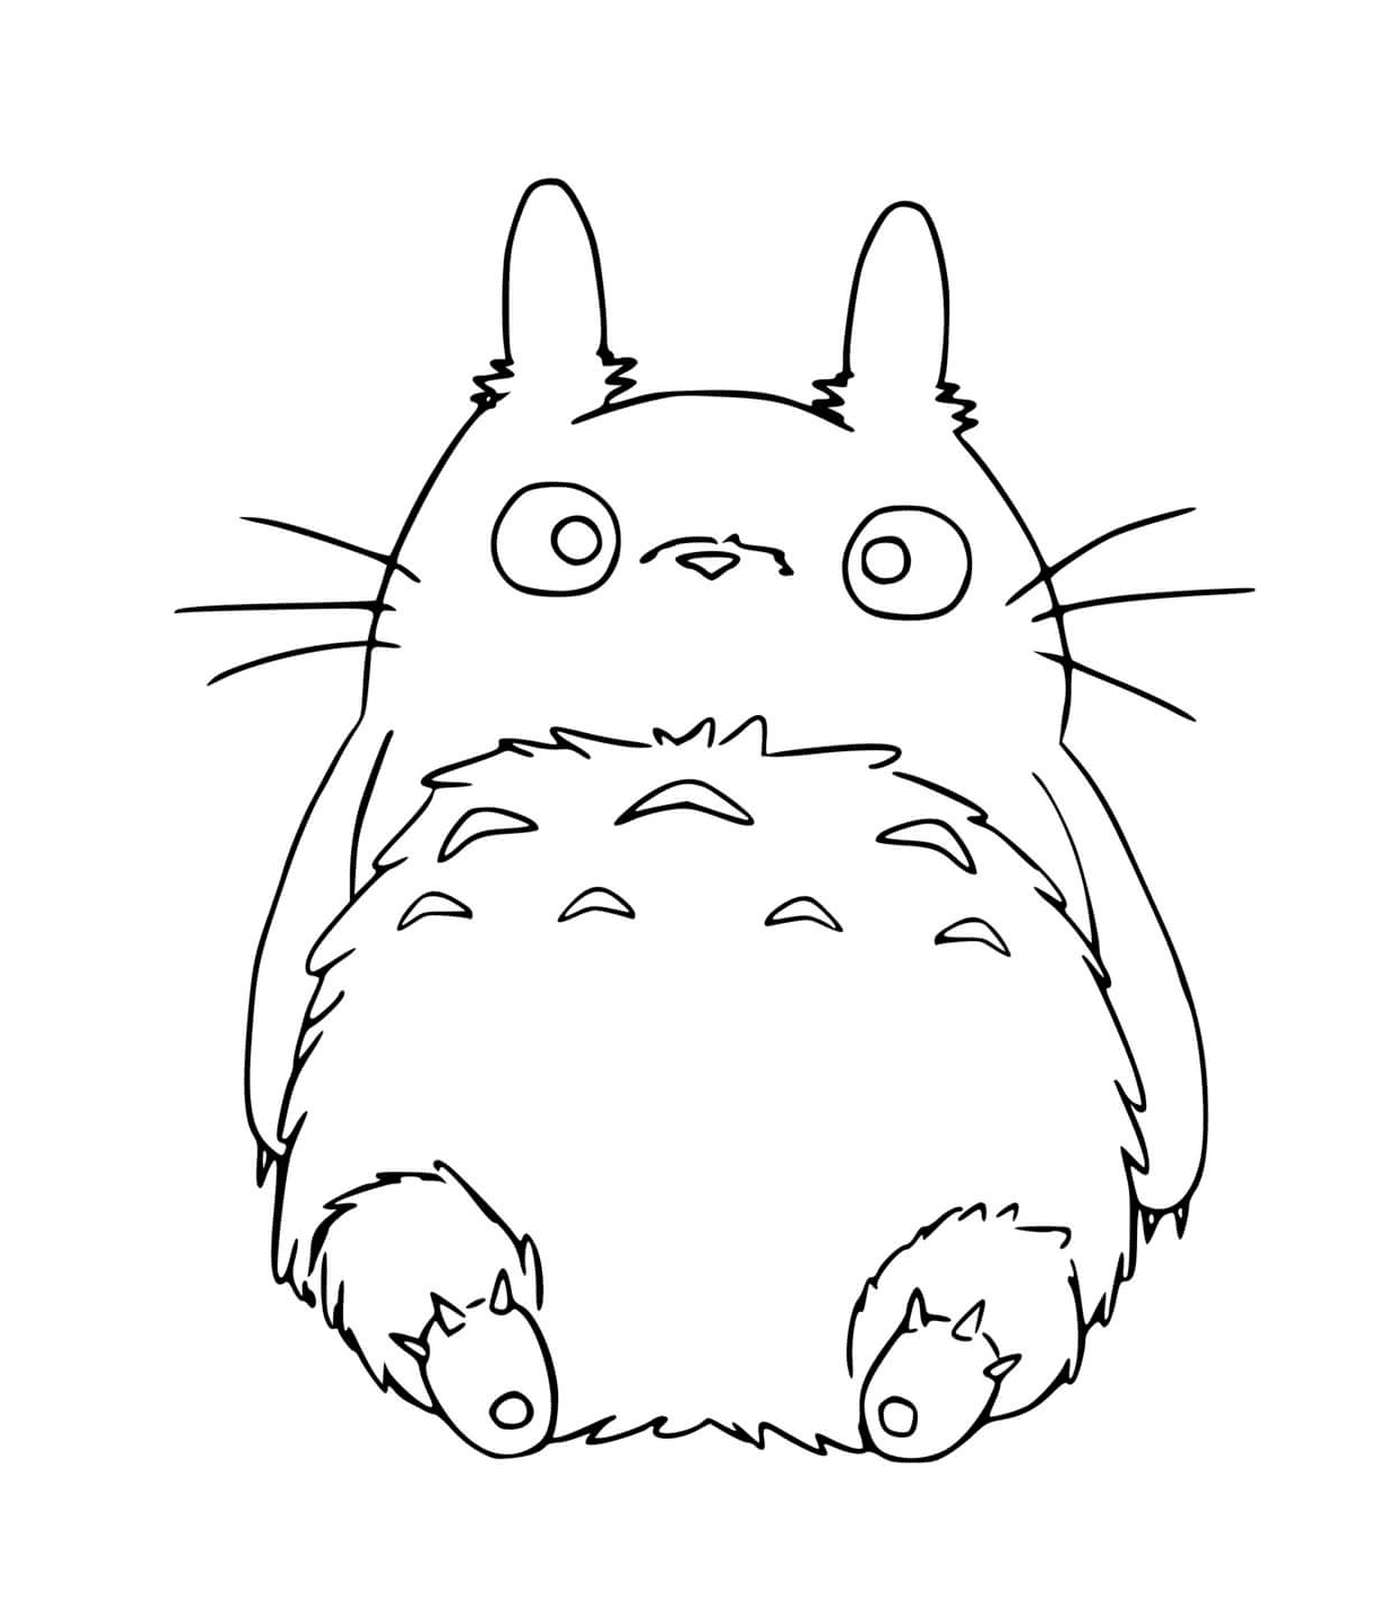  Totoro sitzt auf dem Boden 